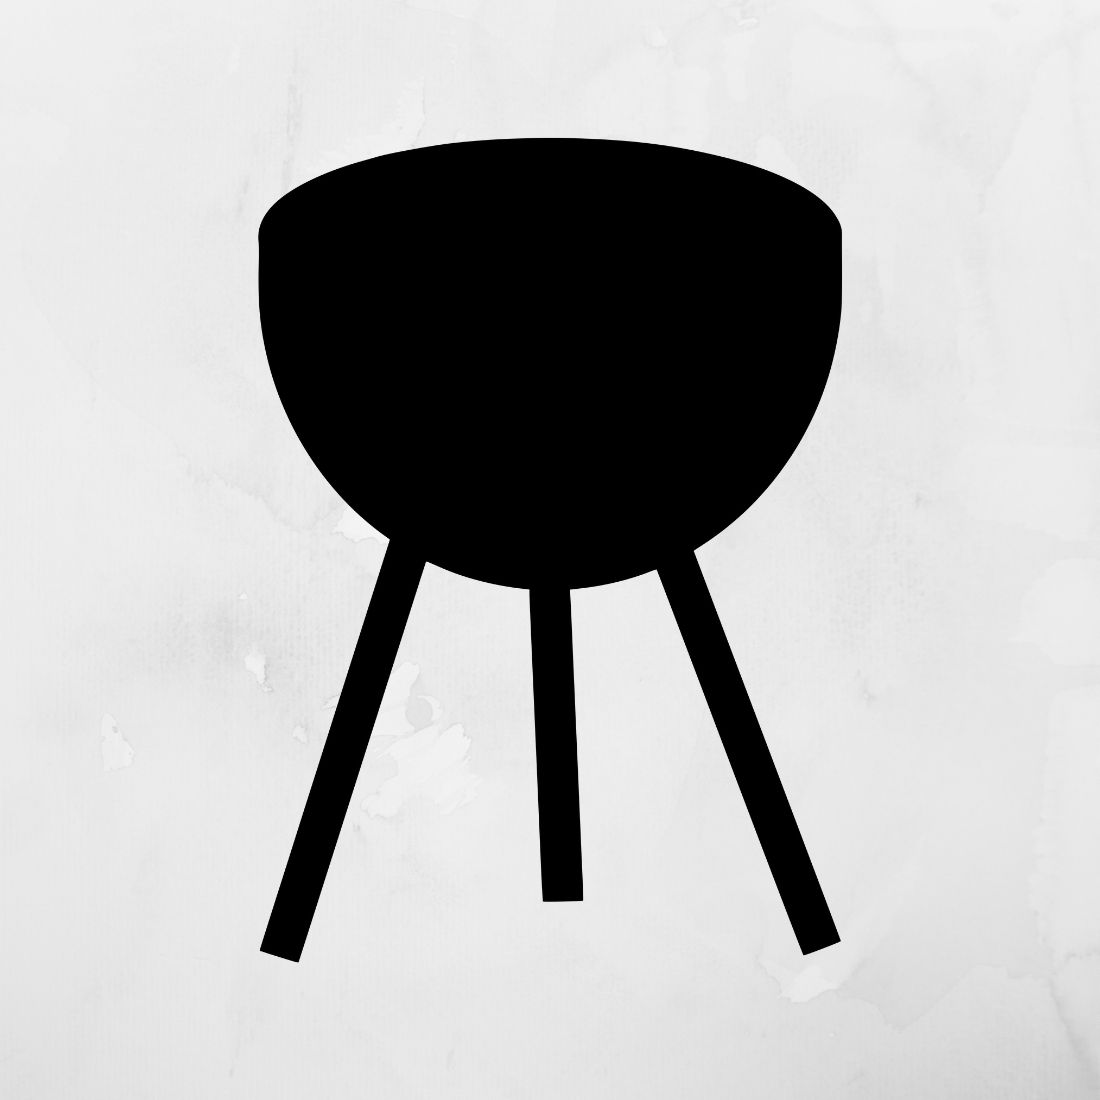 Barbecue SVG & Barbecue Silhouette